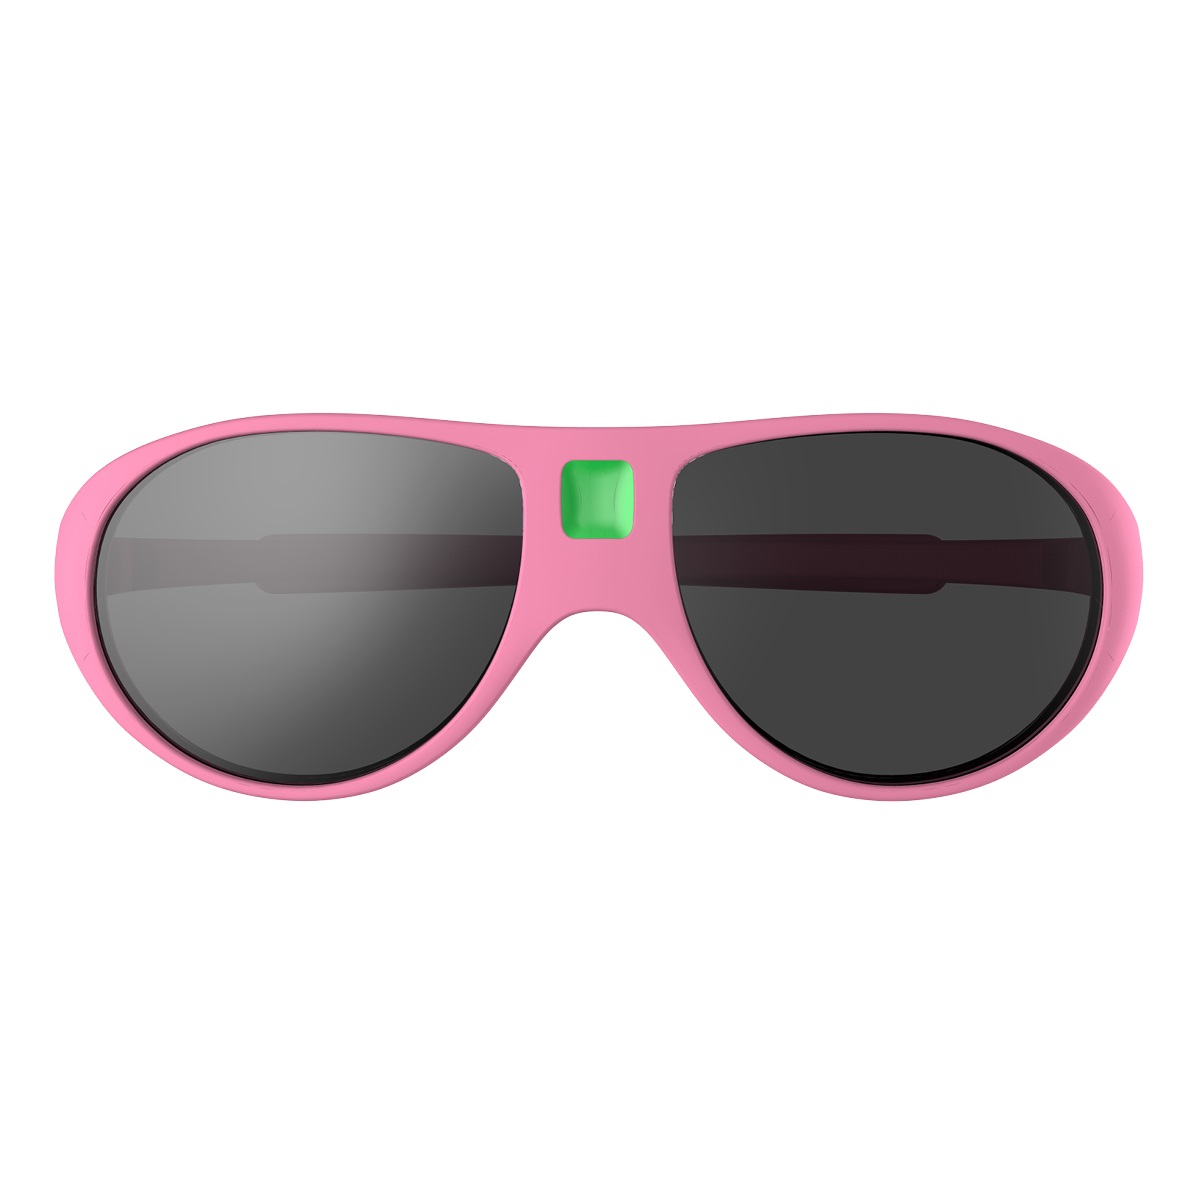 Ki Et La T3Rose Pink Kids Sunglasses 2-4 Years